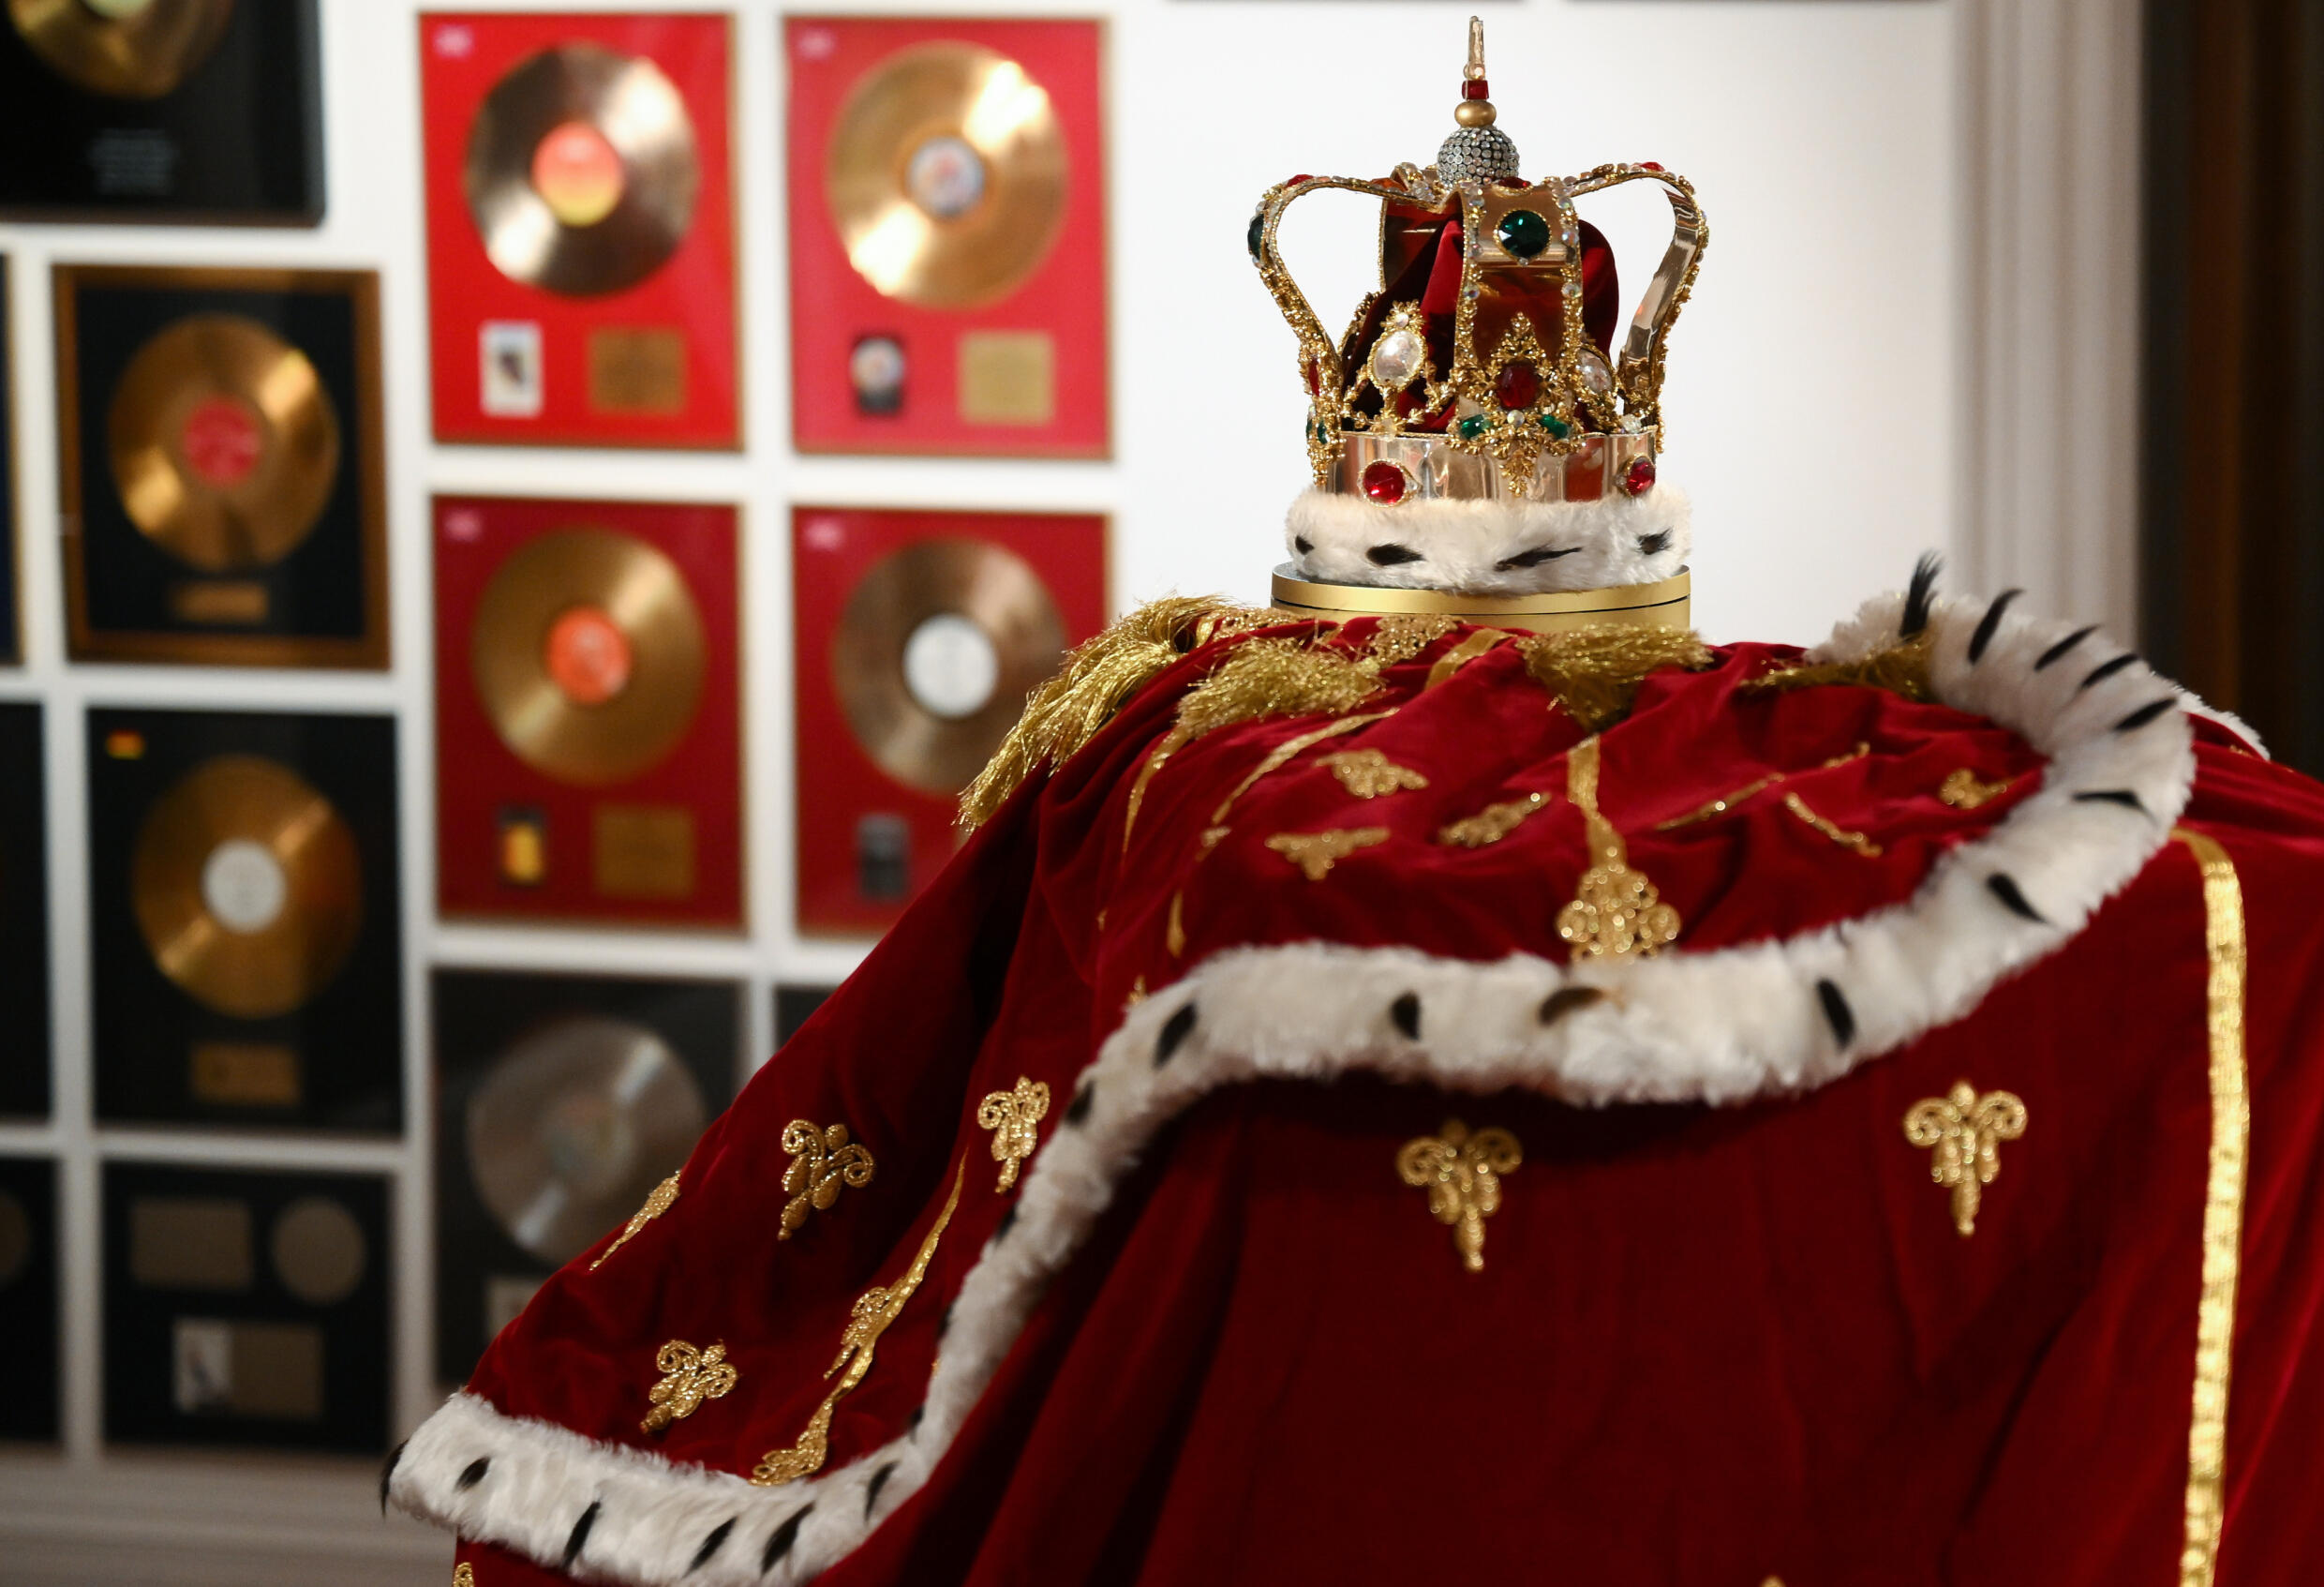 Mercury trug seine Krone und seinen Umhang während der Queen-Tournee 1986.